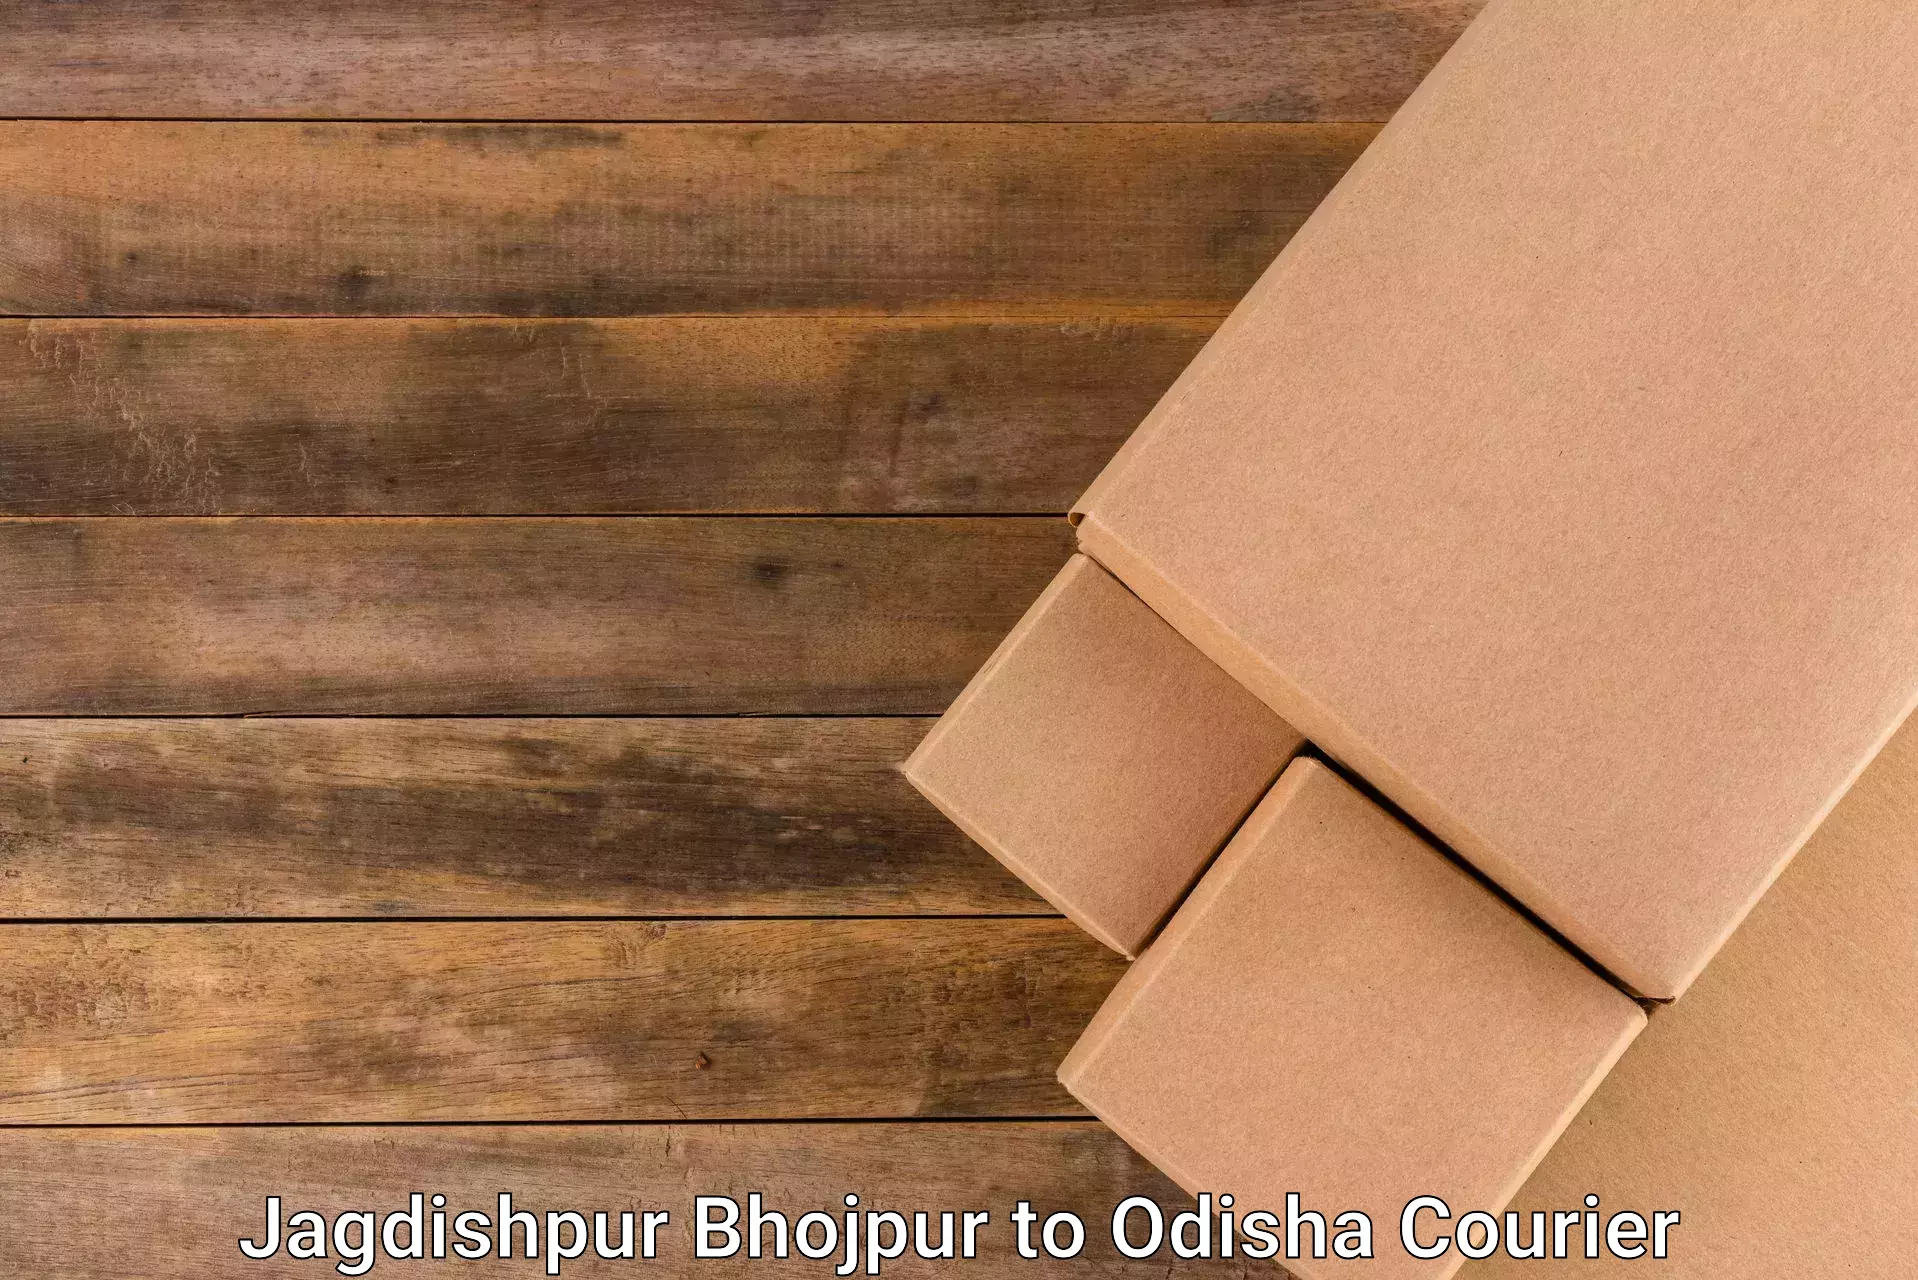 Ocean freight courier Jagdishpur Bhojpur to Daspalla